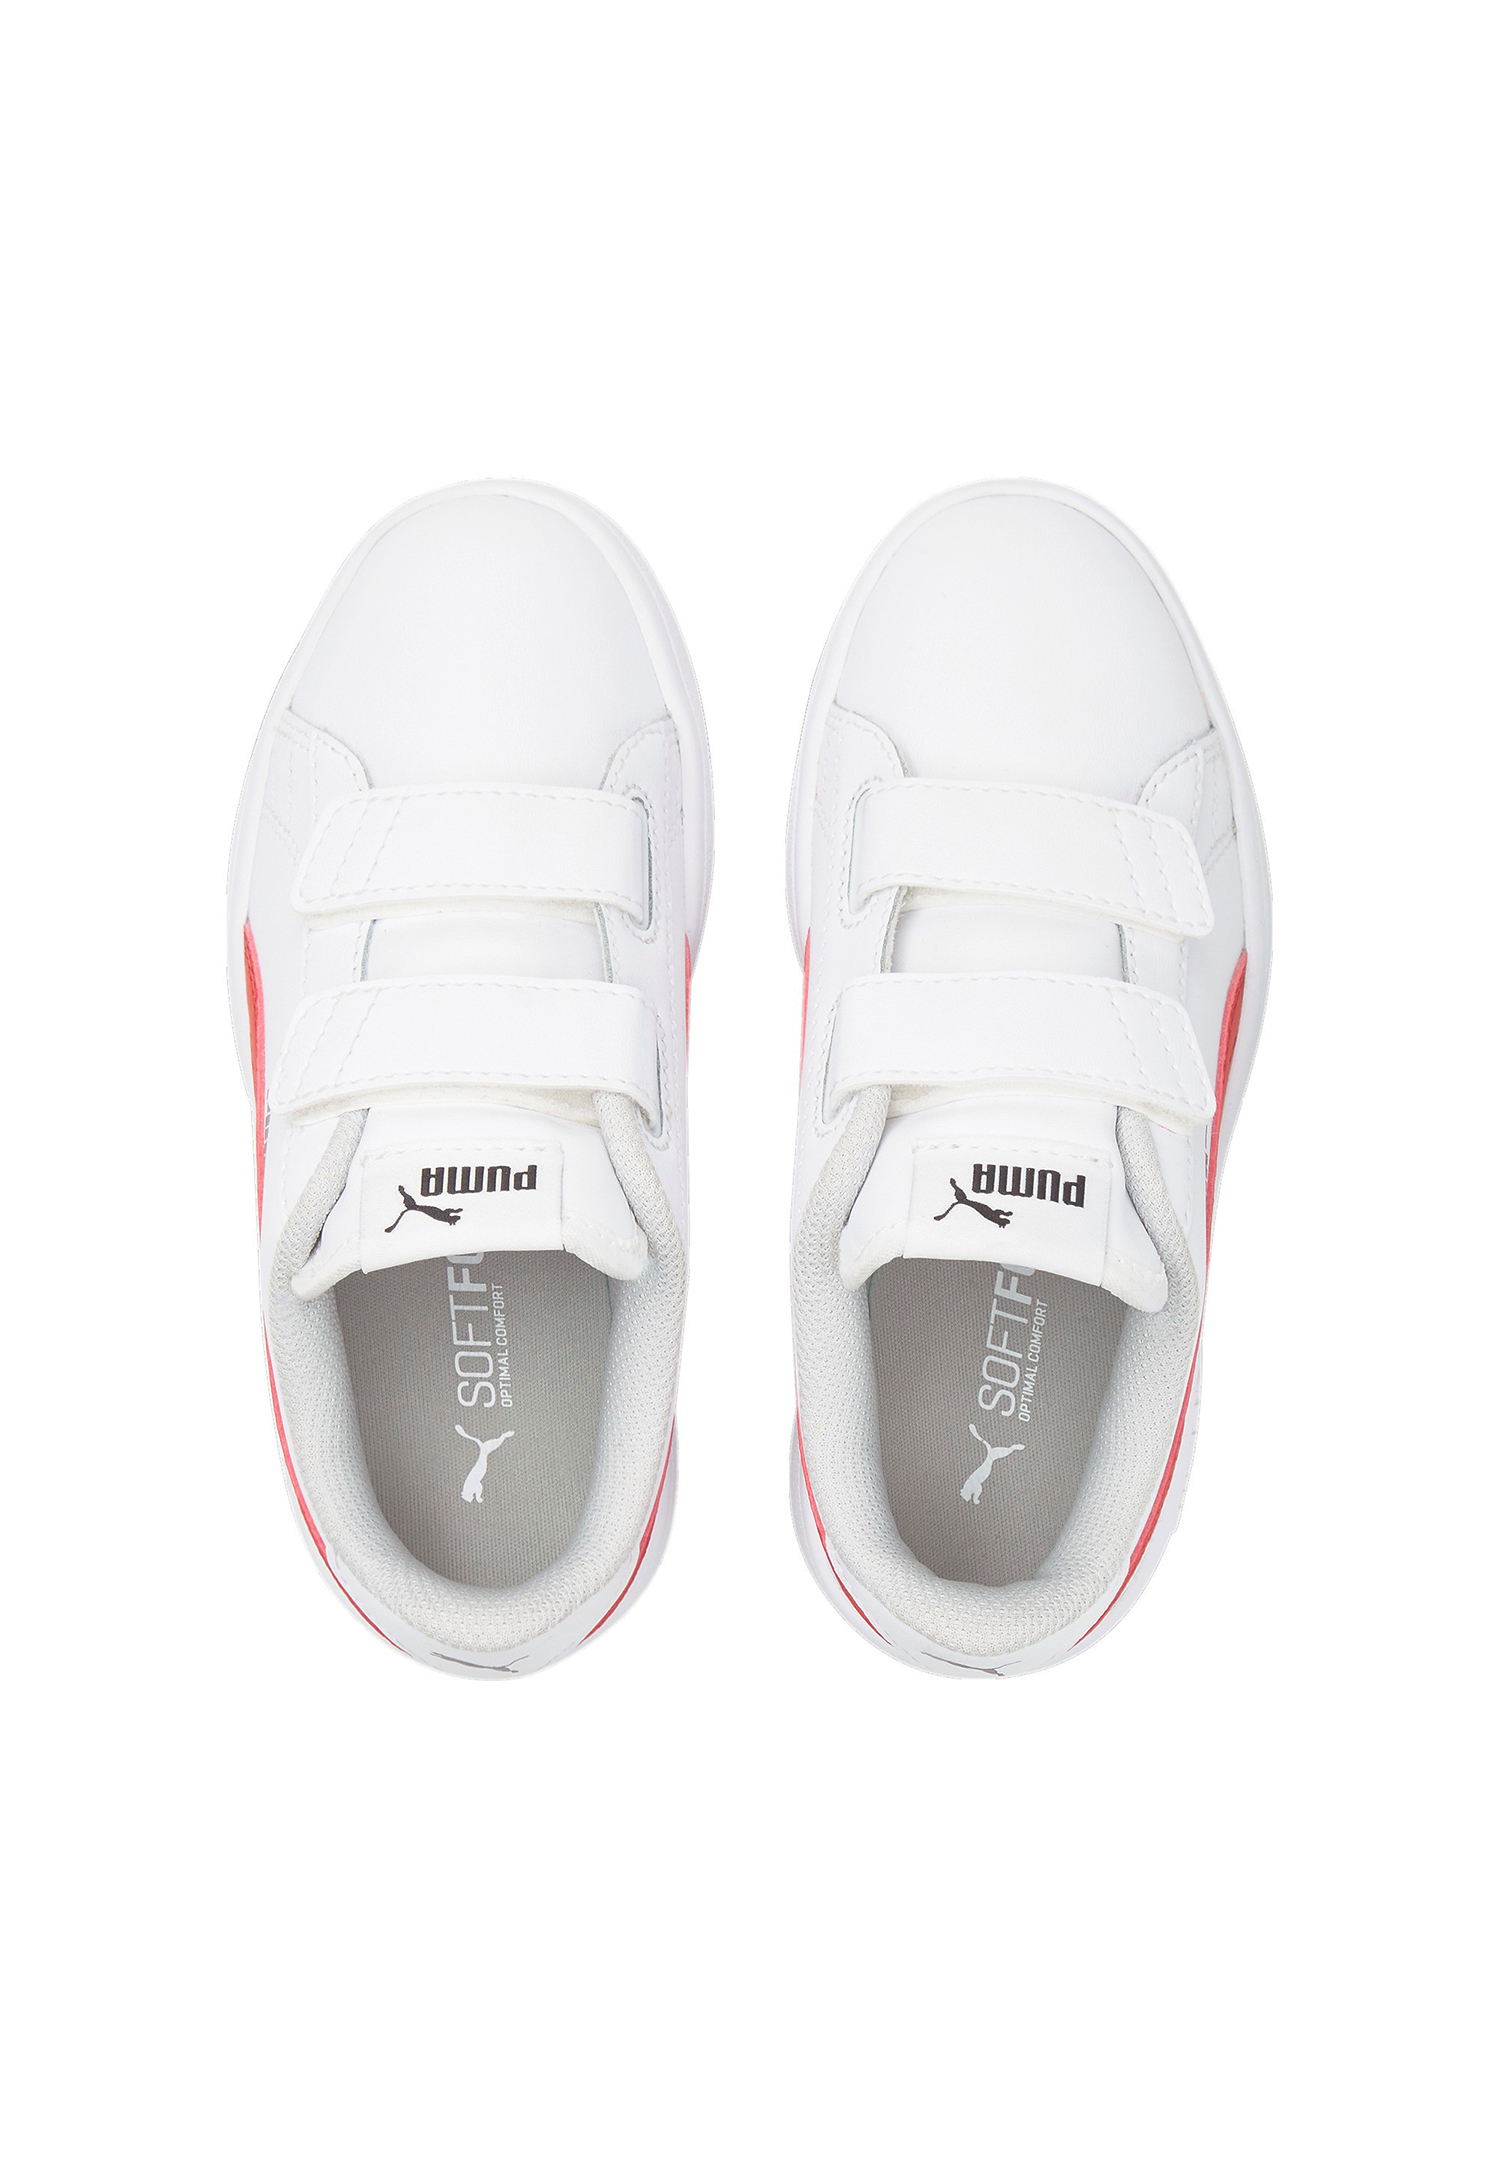 PUMA Smash v2 L V INF Kids Sneaker Schuhe weiss 365174 34